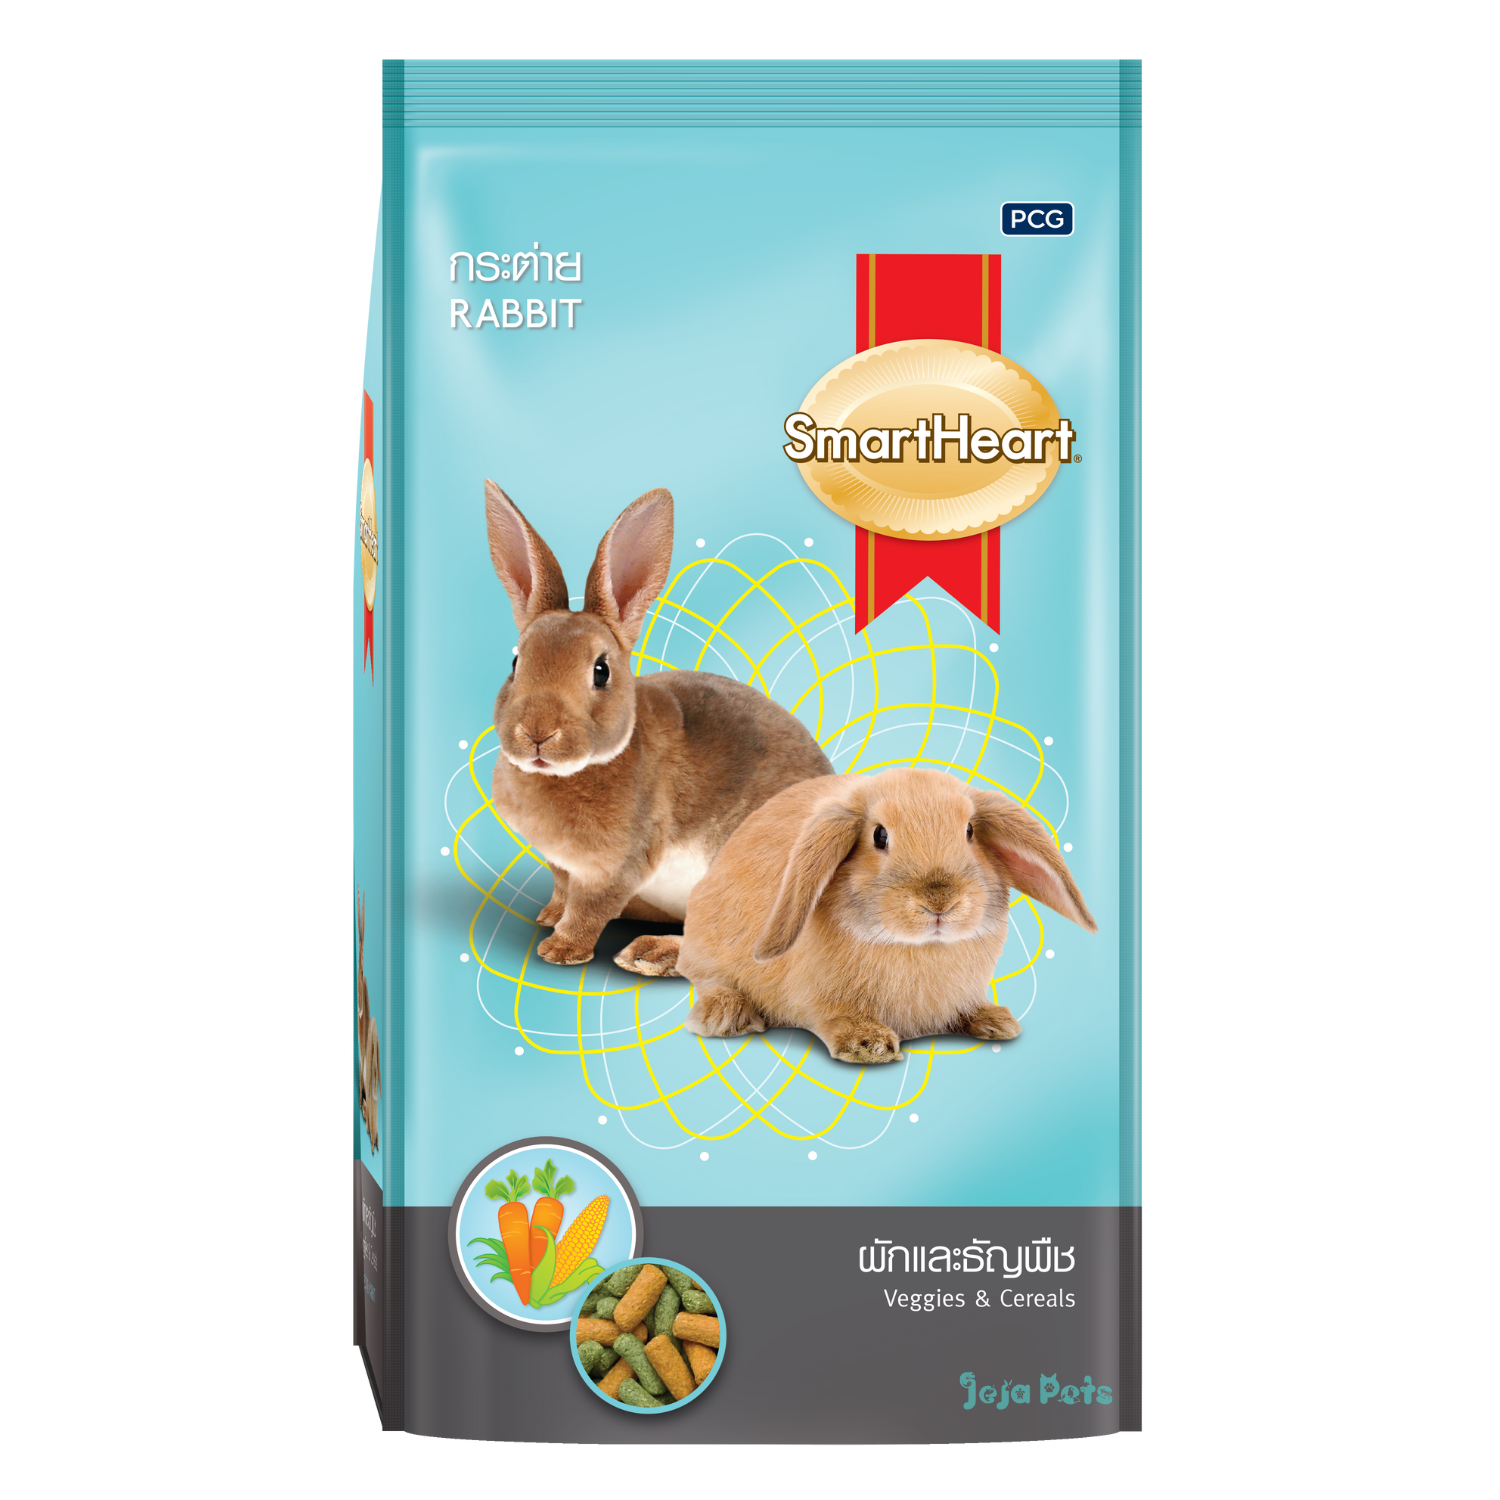 SmartHeart Rabbit Food (Veggies & Cereals) - 1kg